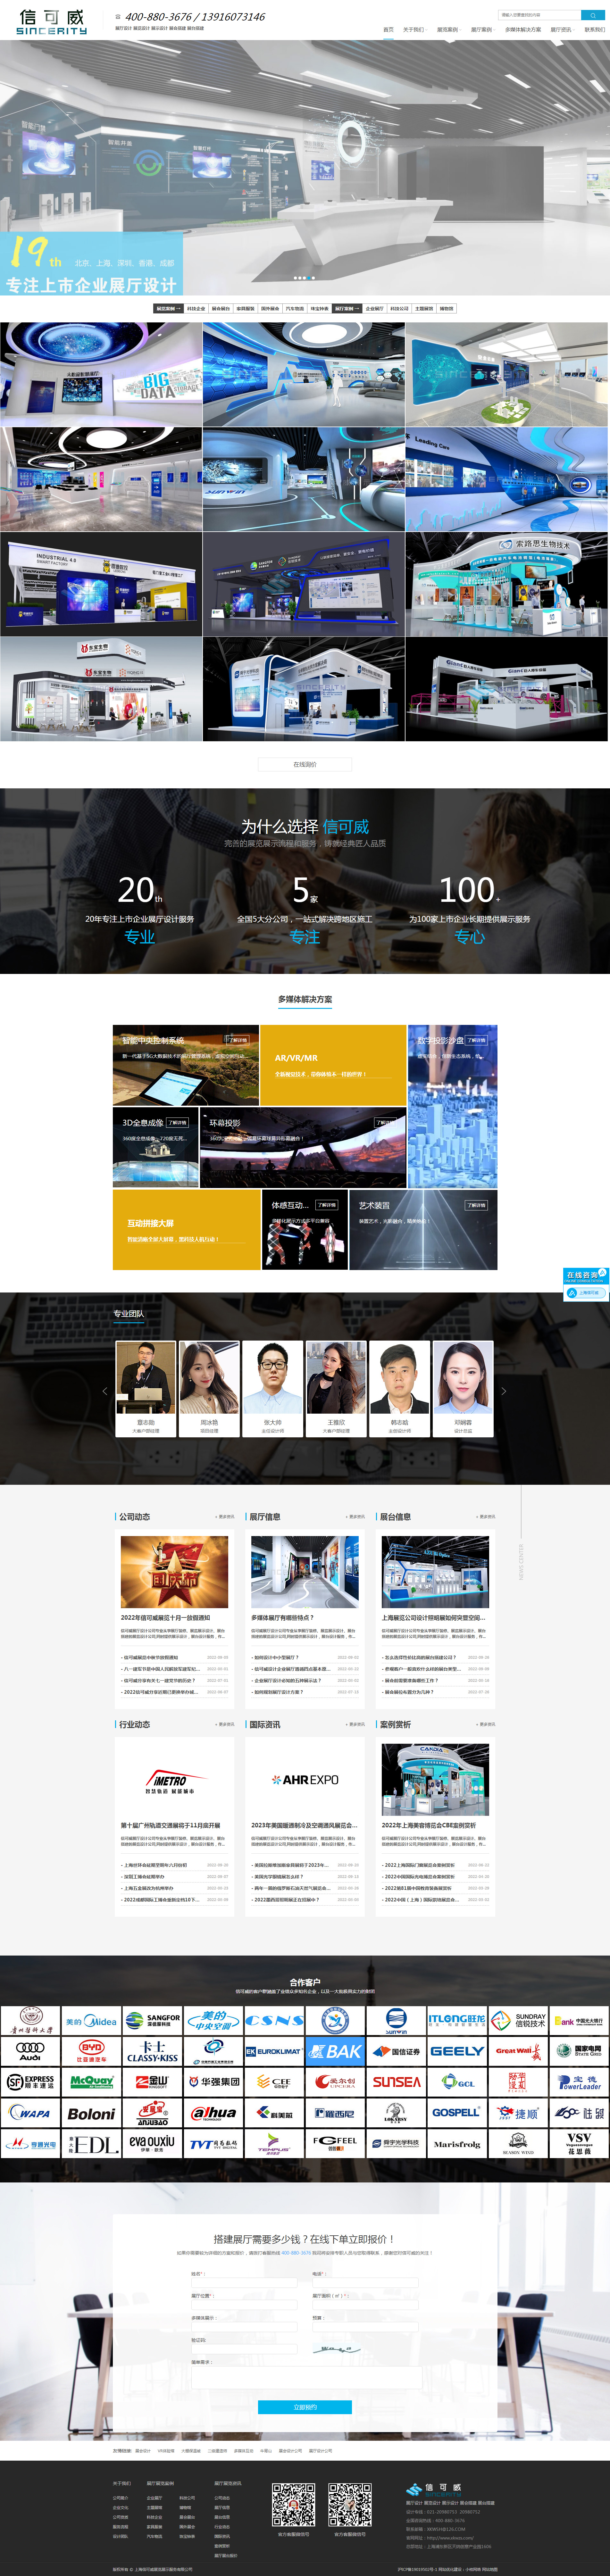 深圳信可威空间规划设计网站设计效果图